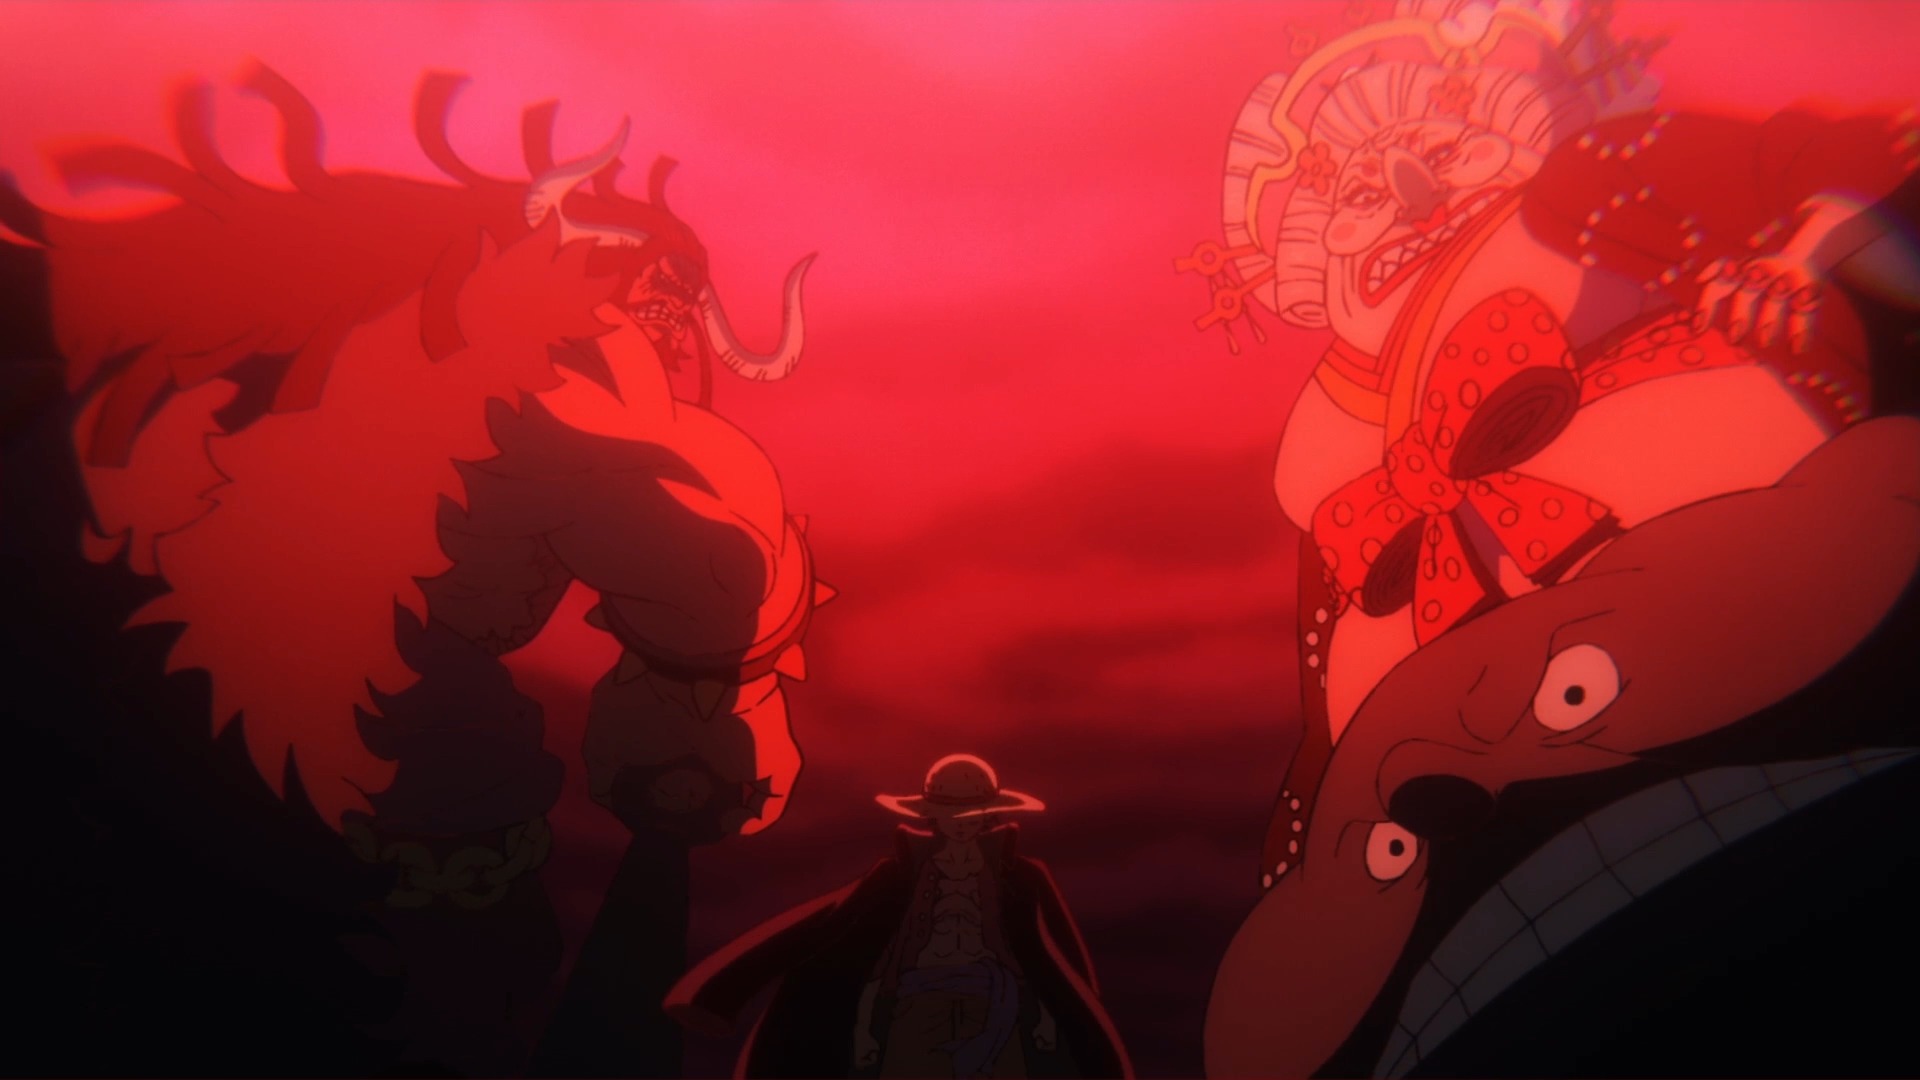 Xem ảnh Luffy đánh Kaido để chứng kiến sức mạnh phi thường của đội trưởng Mũ Rơm! Liệu anh ta có thể ngăn chặn được Kaido, kẻ thống trị đảo Onigashima? Đừng bỏ lỡ trận chiến kinh điển này!